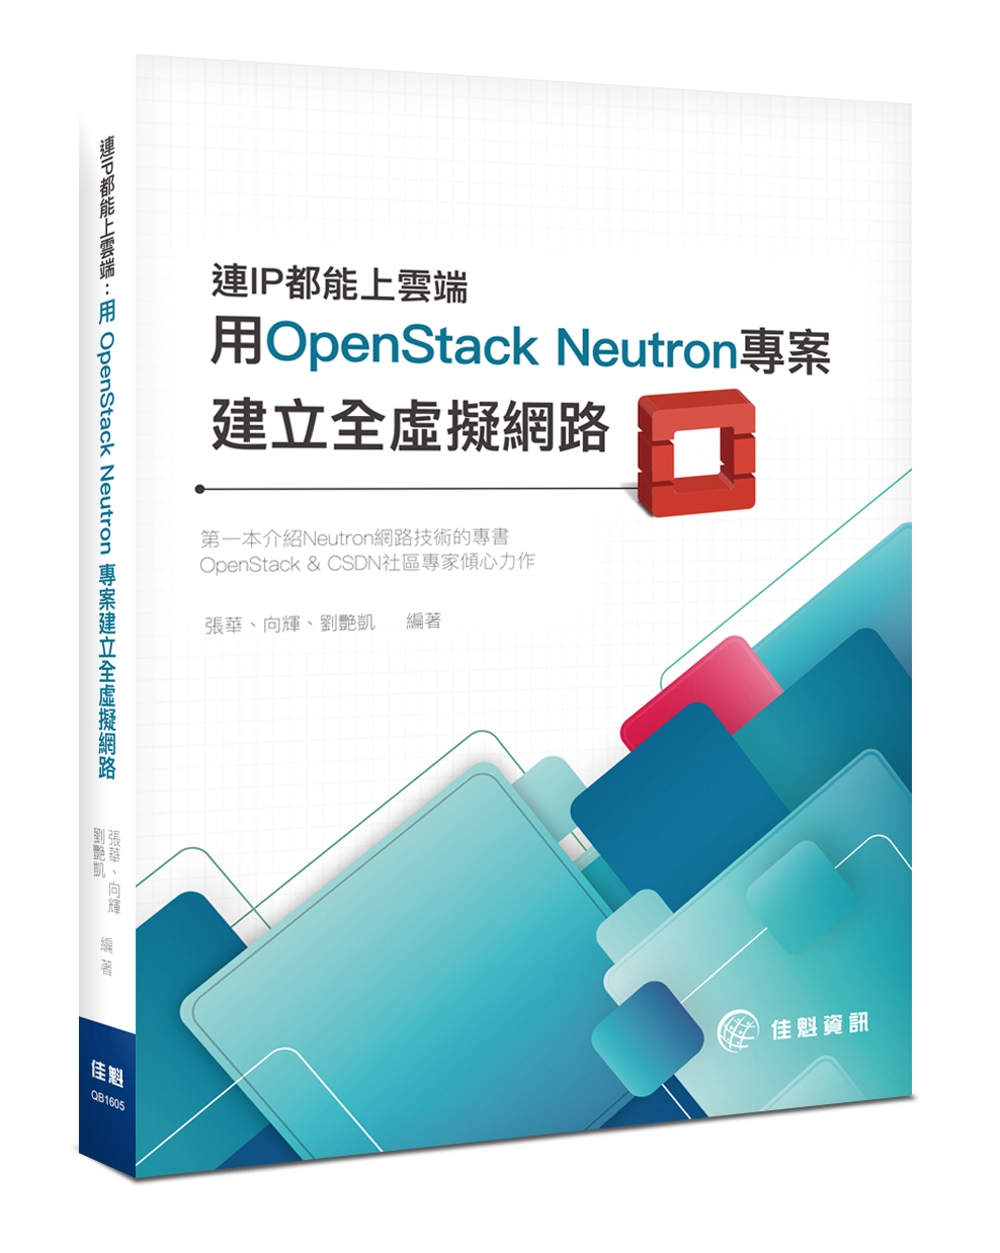 連IP都能上雲端：用OpenStack Neutron 專案建立全虛擬網路